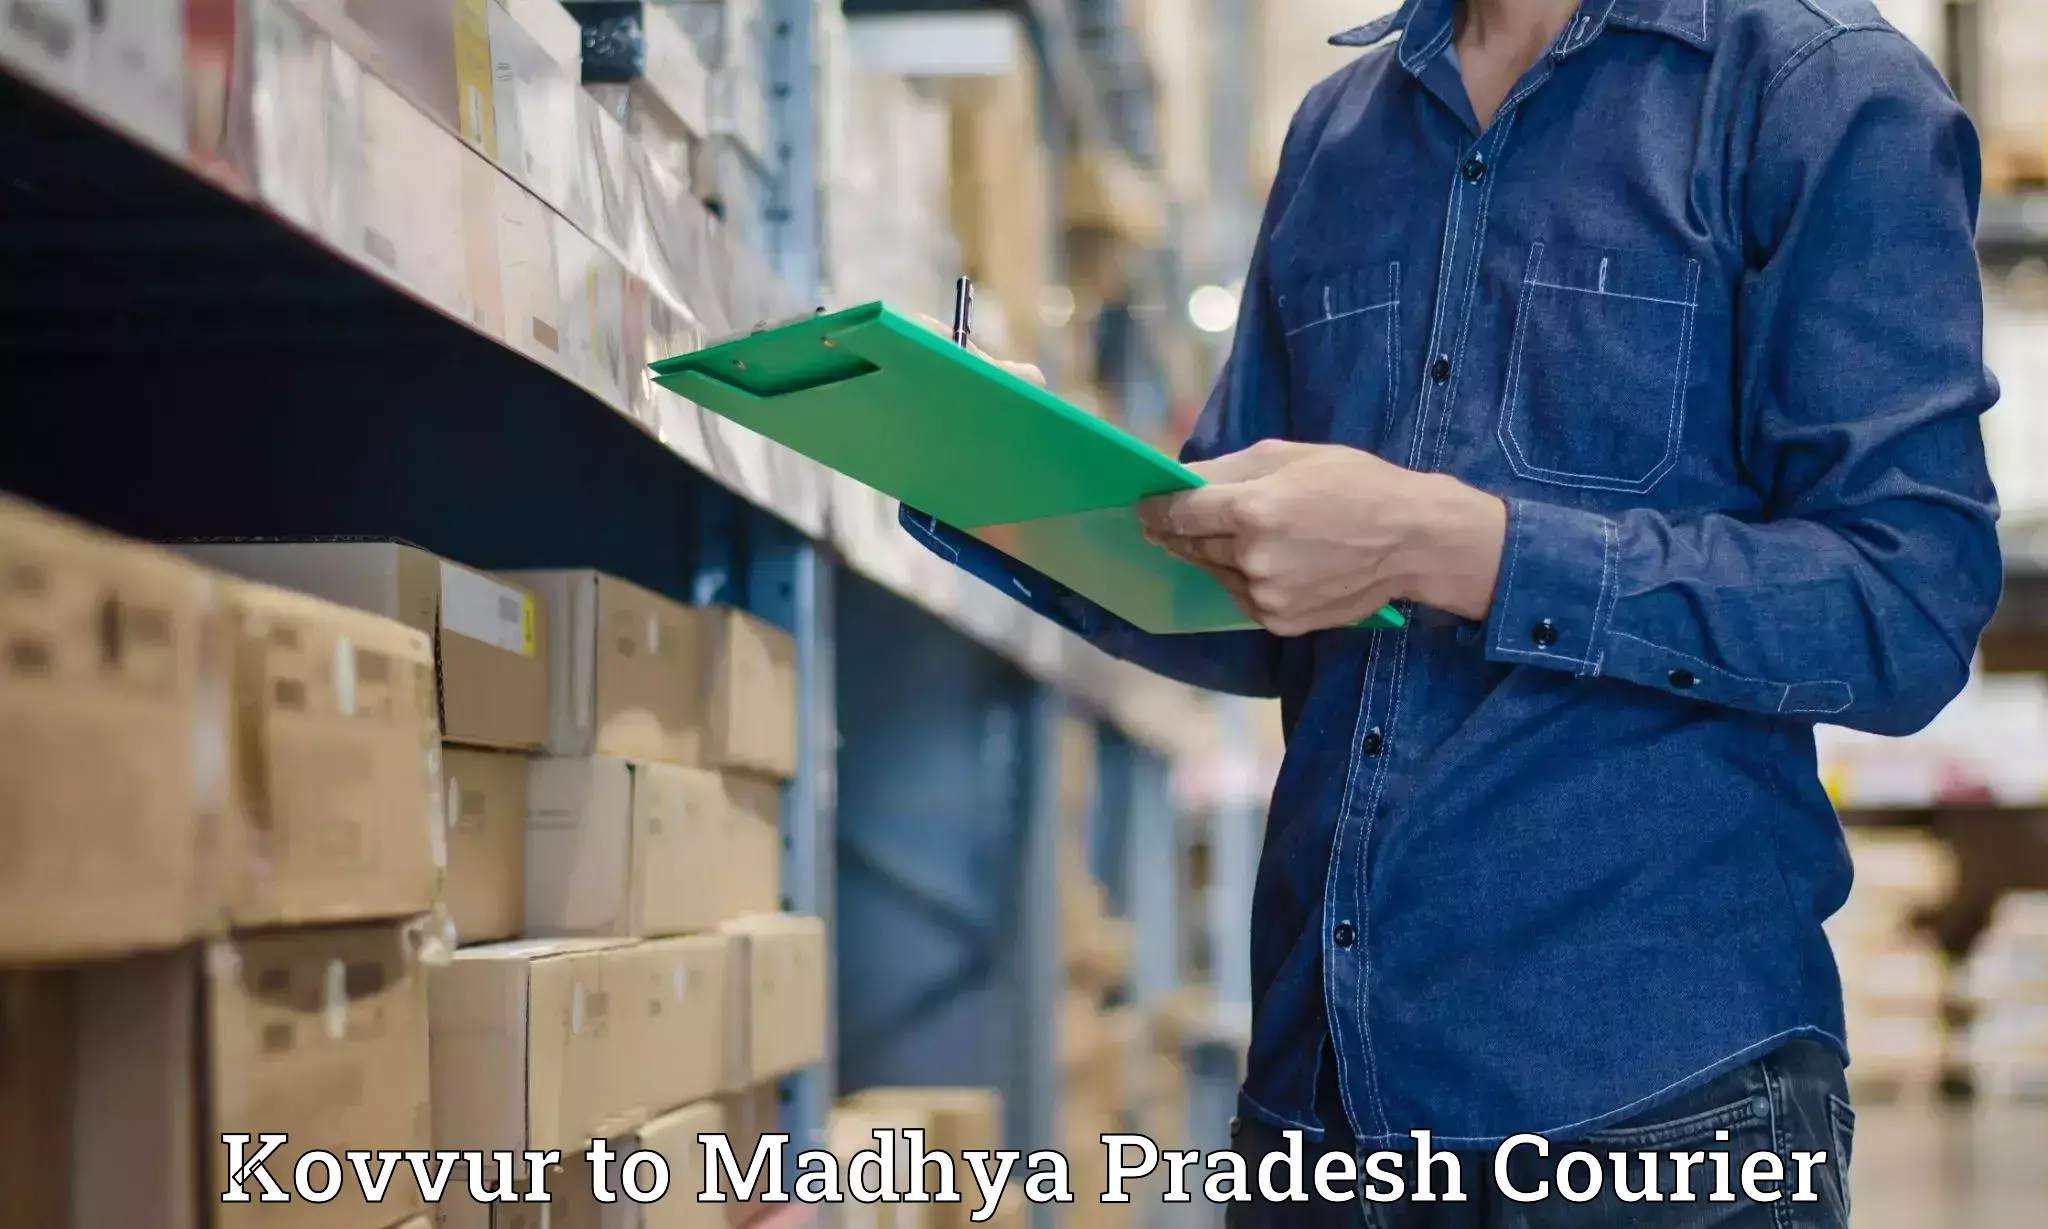 Professional courier handling Kovvur to Garh Rewa